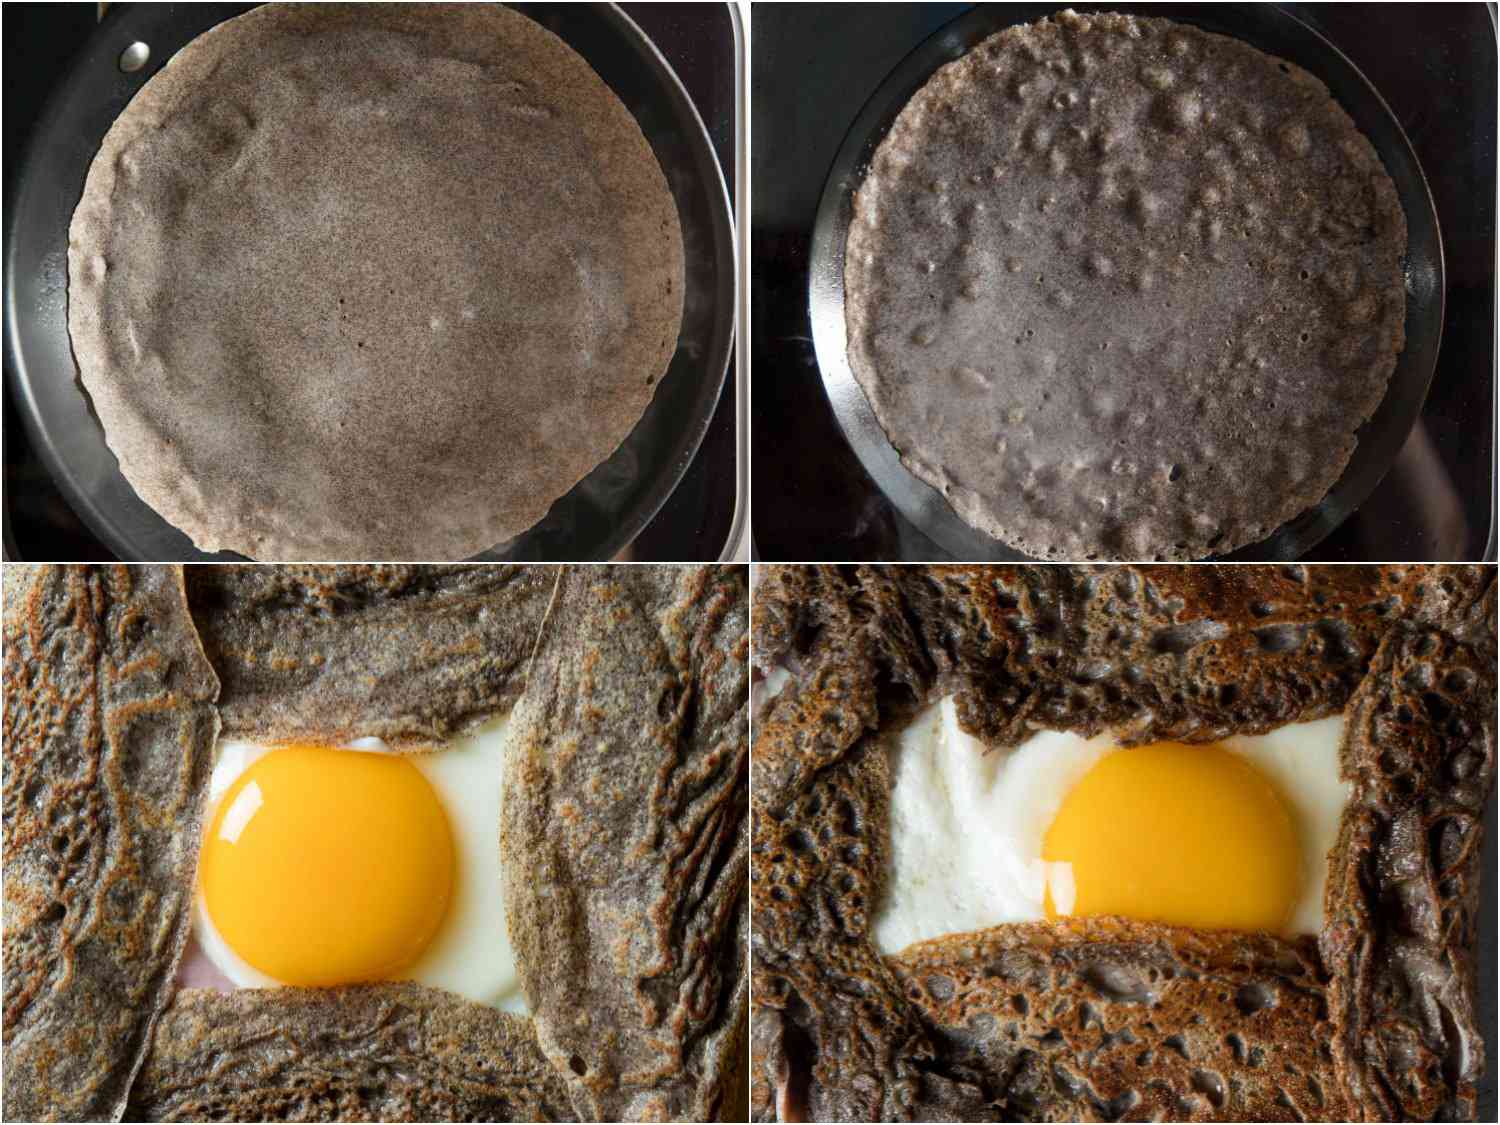 四个图像。左上角的图片显示了在不粘锅中烹制的可丽饼。左下角的图片显示了最终的鸡蛋煎饼。右边的两张图片显示了在碳钢锅中烹饪的可丽饼和最终填充的可丽饼。标题描述了不同之处。gydF4y2Ba